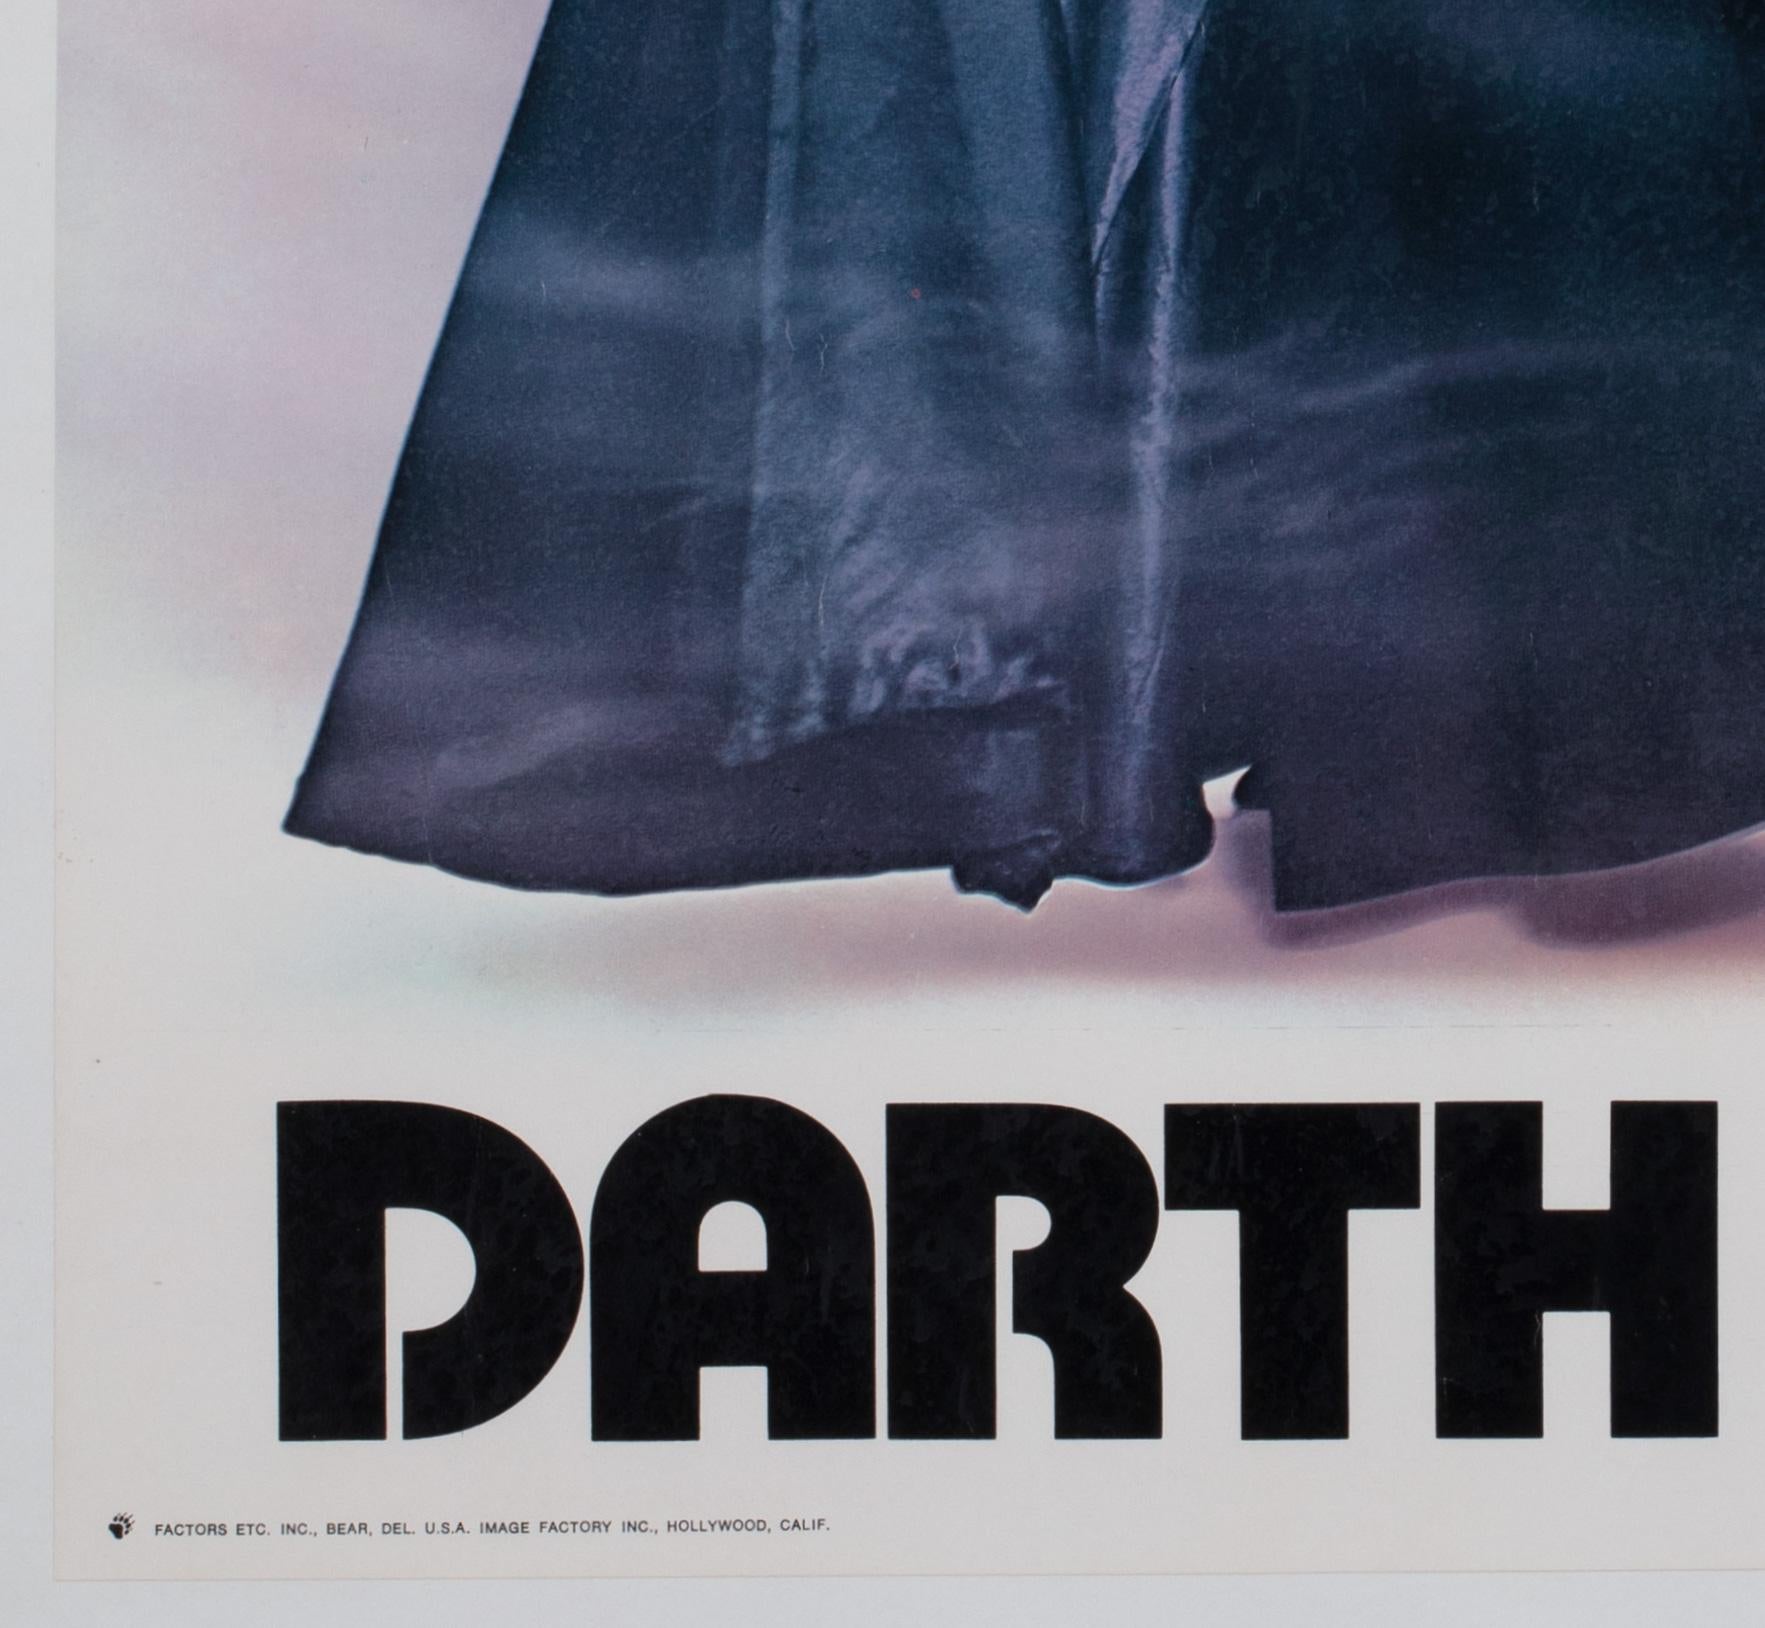 Star Wars Darth Vader 1977 Vintage Factor Inc Commercial Poster For Sale 1